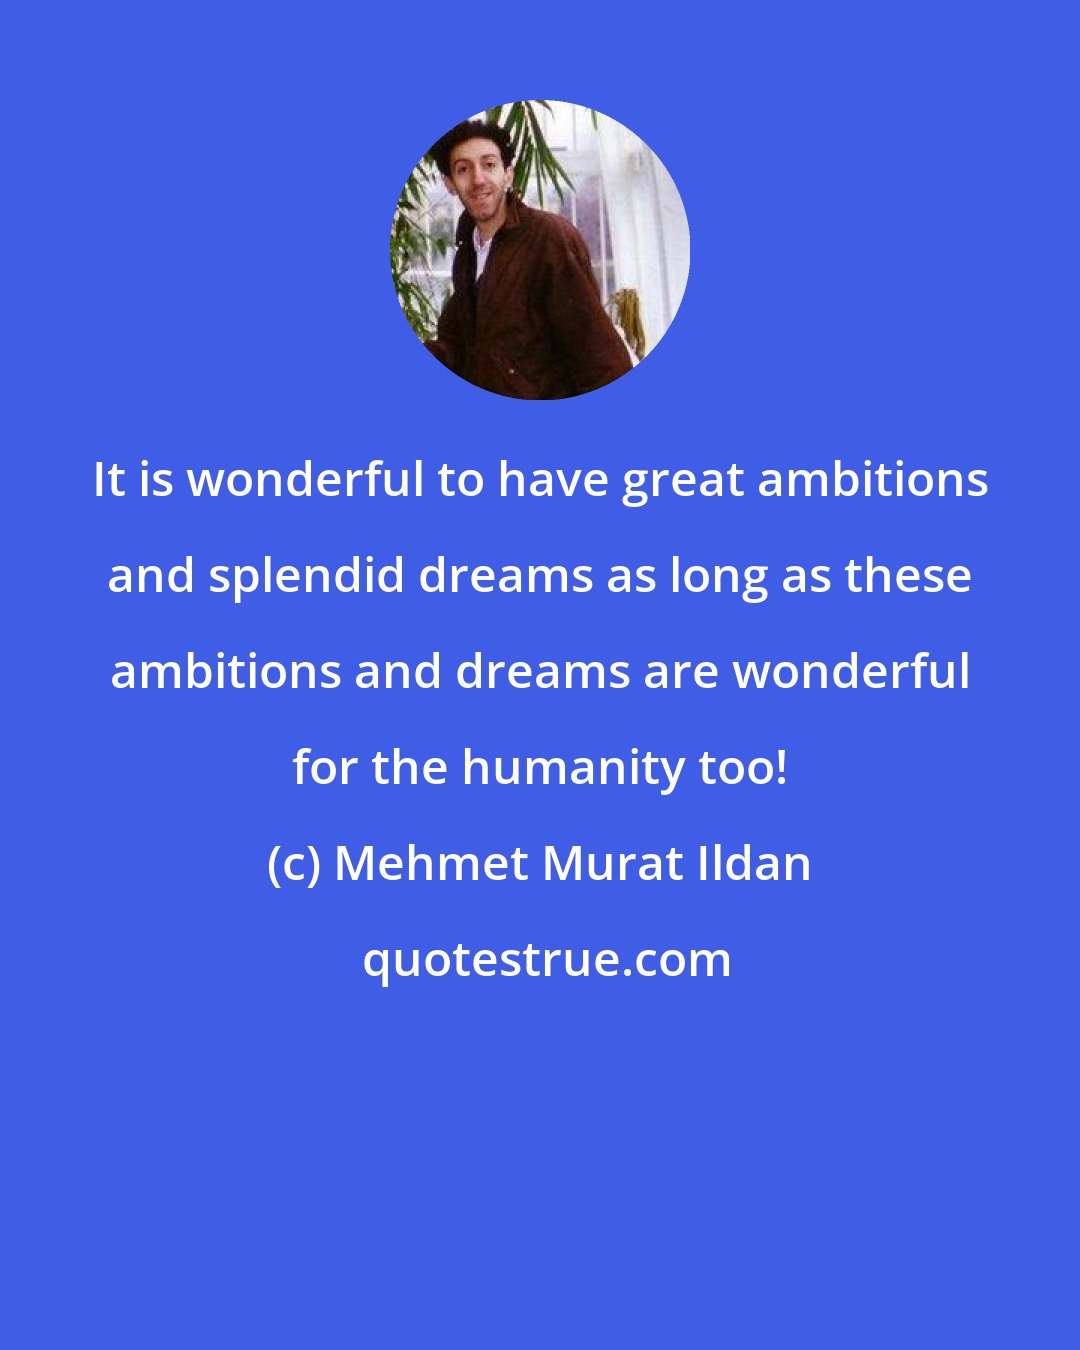 Mehmet Murat Ildan: It is wonderful to have great ambitions and splendid dreams as long as these ambitions and dreams are wonderful for the humanity too!